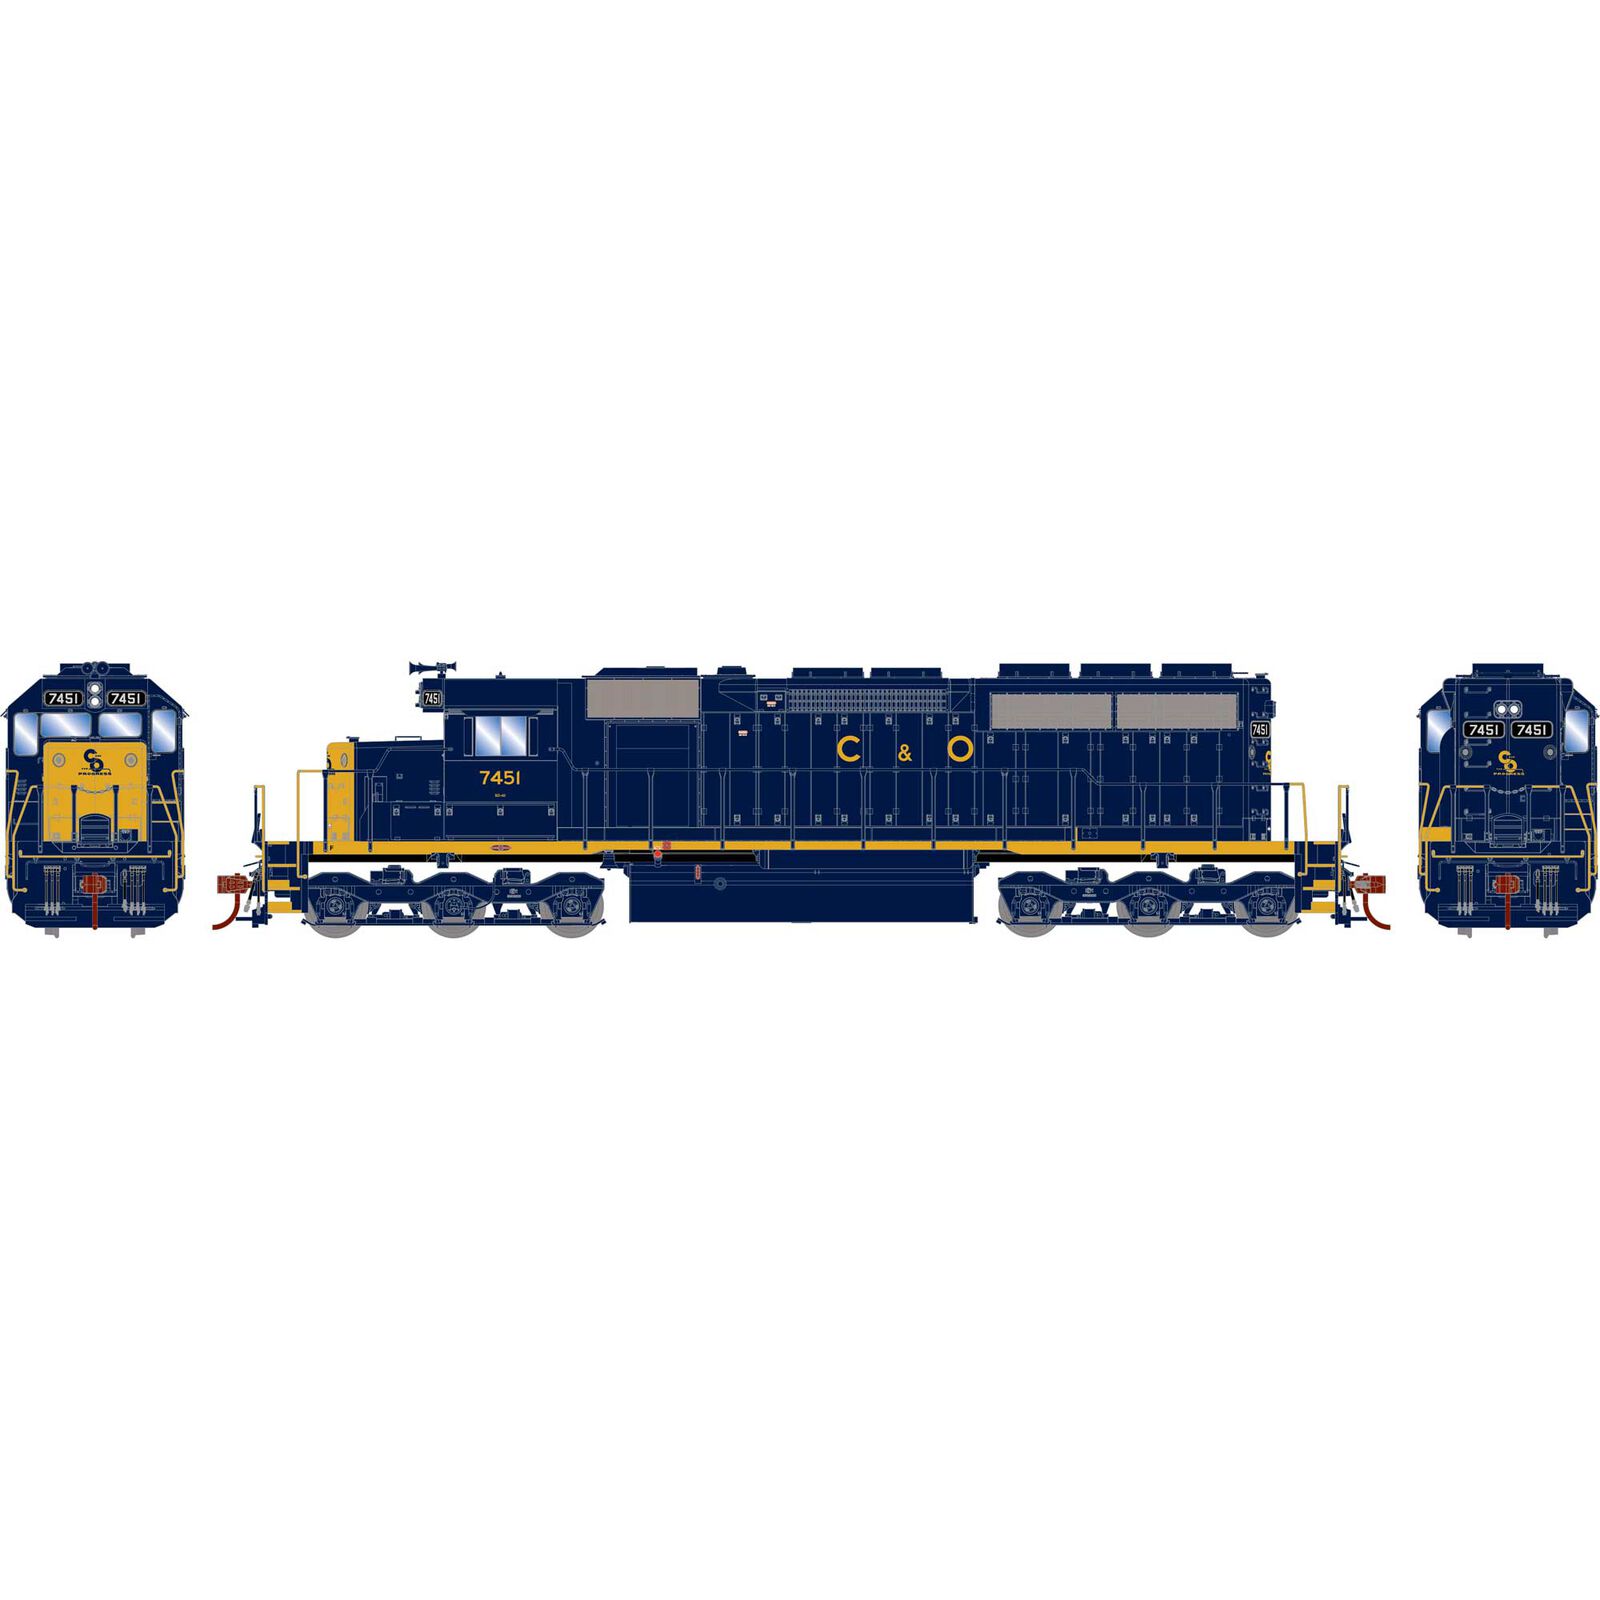 HO SD40 Locomotive with DCC & Sound, C&O #7451